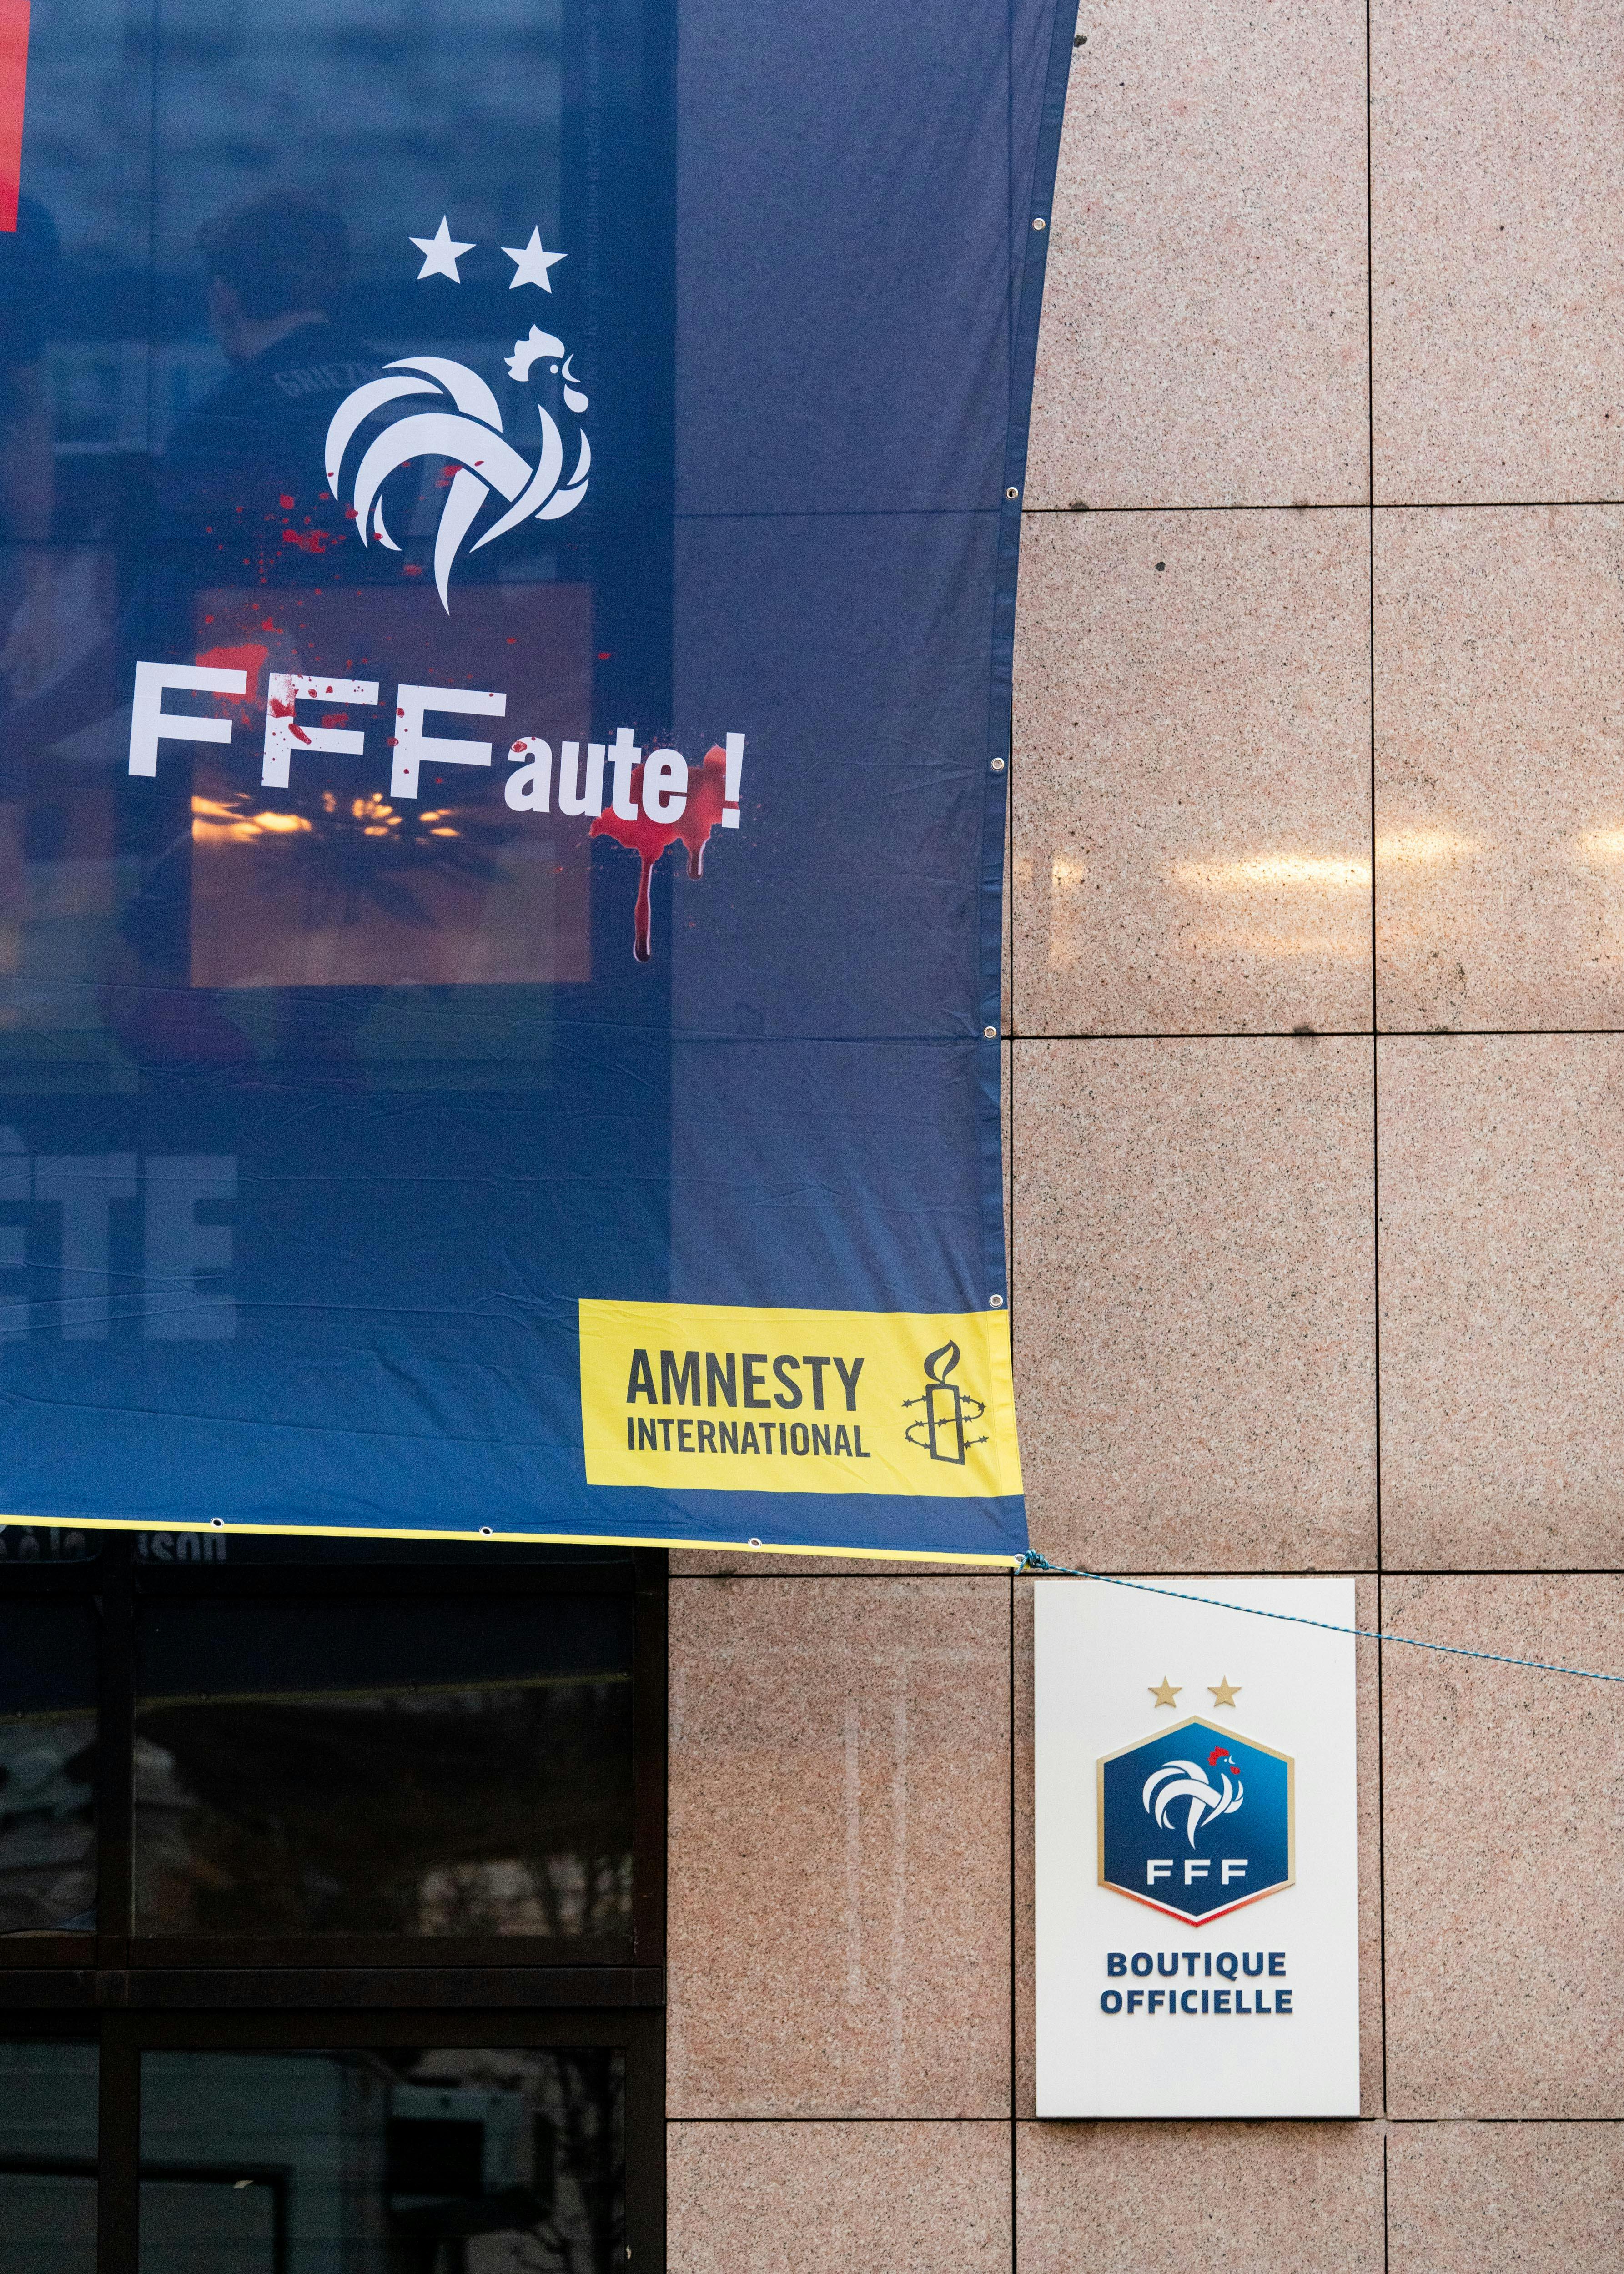 Photo prise le 15 décembre 2021, devant le siège de la Fédération Française de Football pour leur rappeler leurs responsabilités vis-à-vis des violations de droits humains des travailleurs migrants au Qatar, dans le cadre de la coupe du monde 2022. Crédit : Benjamin Girette